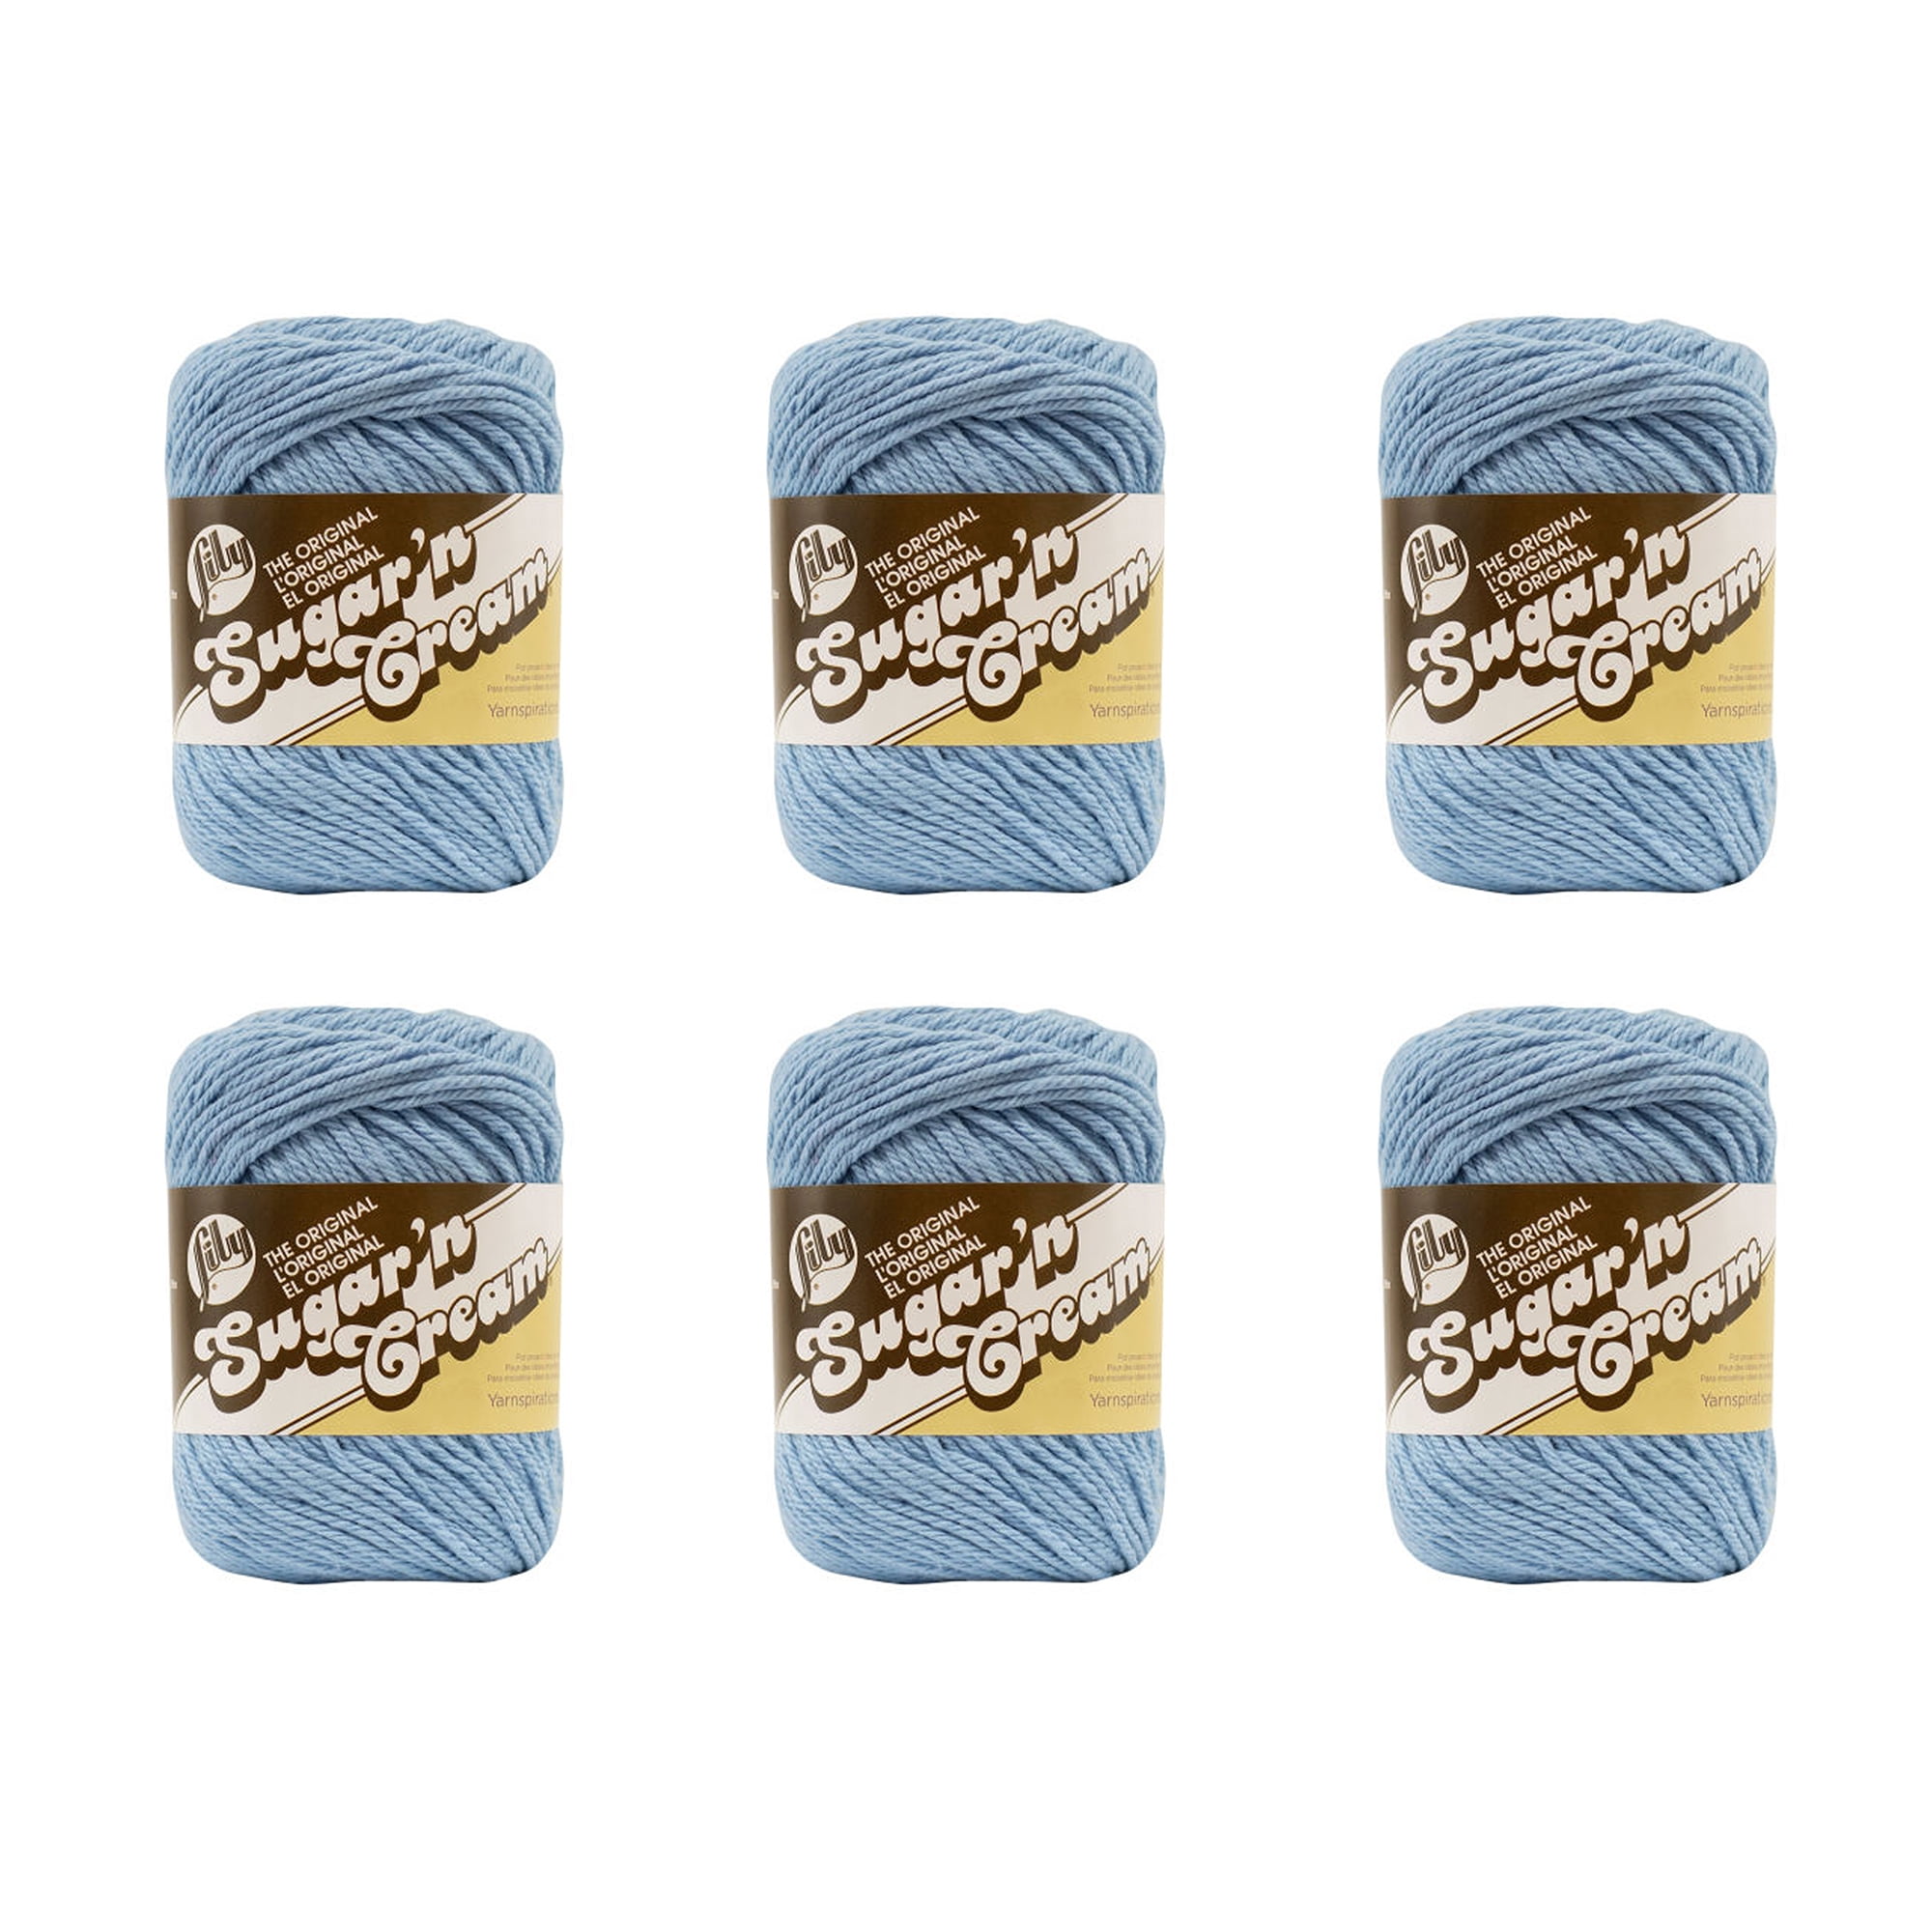 Lily Sugar 'N Cream The Original Solid Yarn, 2.5oz, Medium 4 Gauge, 100%  Cotton - Sage Green - Machine Wash & Dry